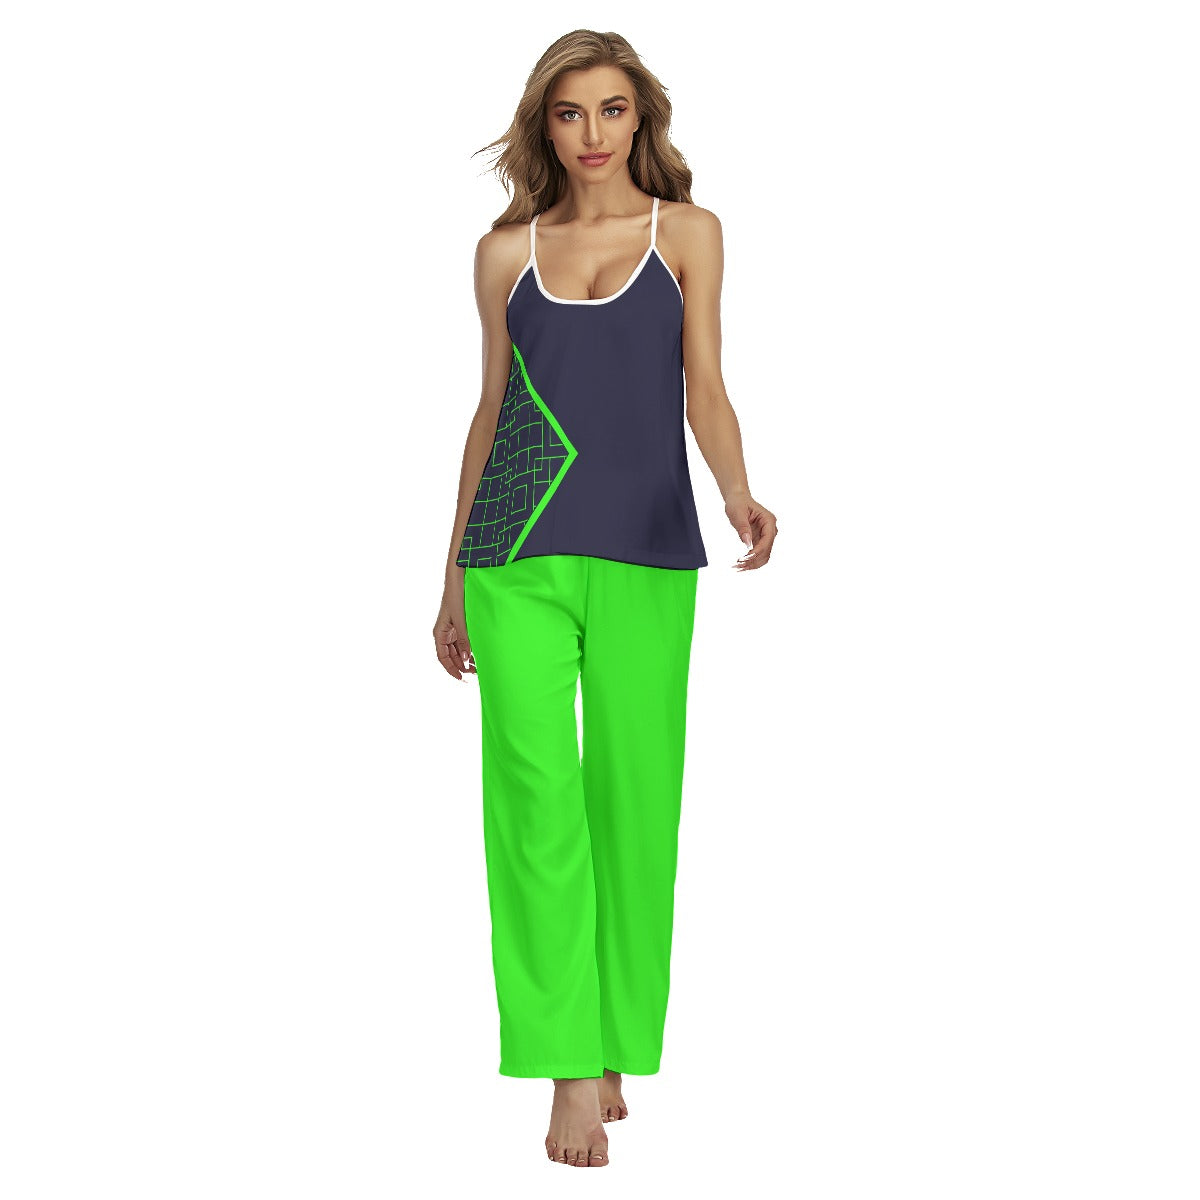 Lisa -Navy Blue/Green -  A1 - Pickleball Cami Pajamas Set by Dizzy Pickle